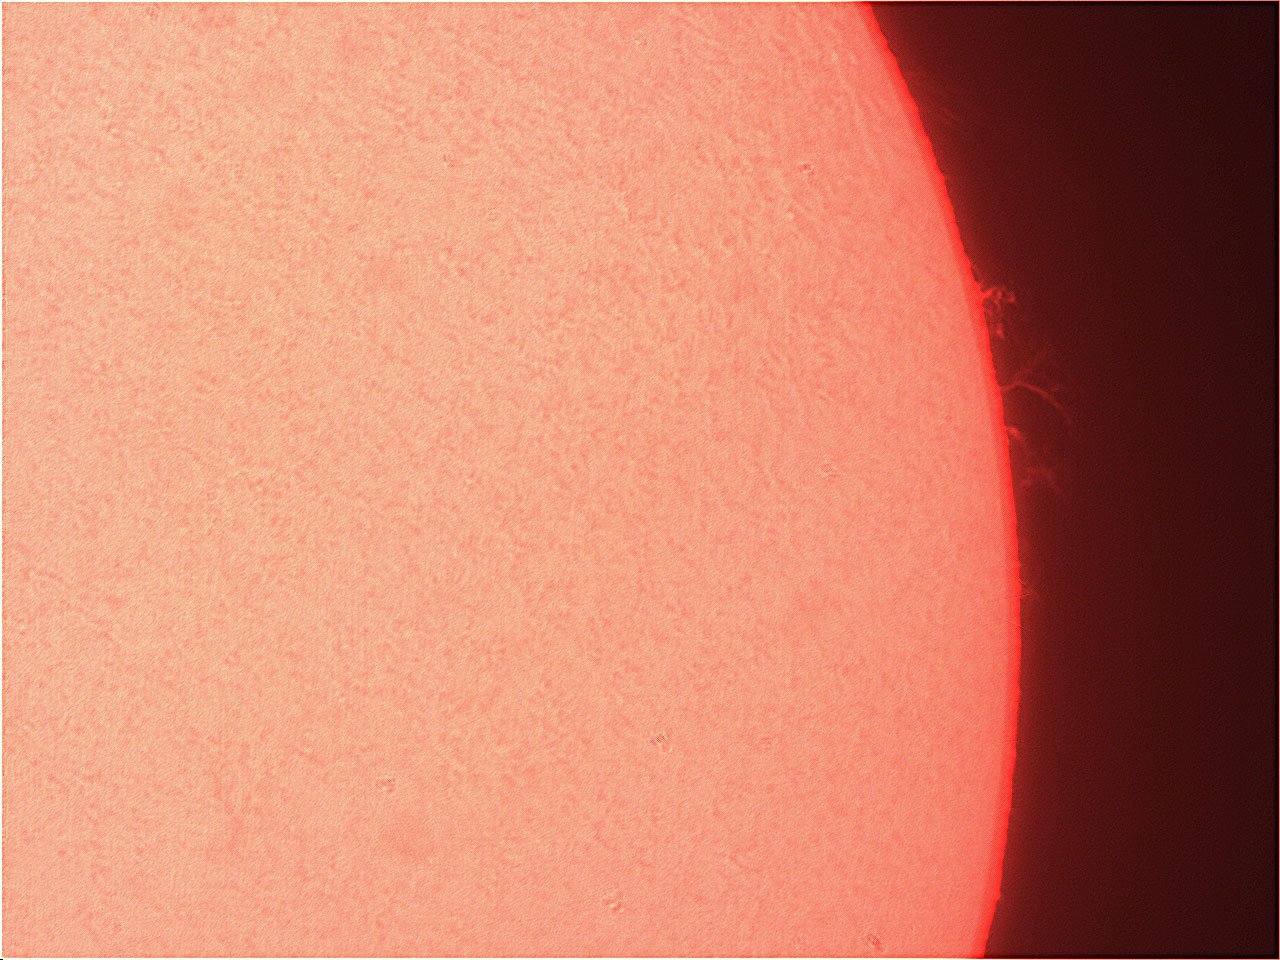 Prominence-151221-vid454.jpg